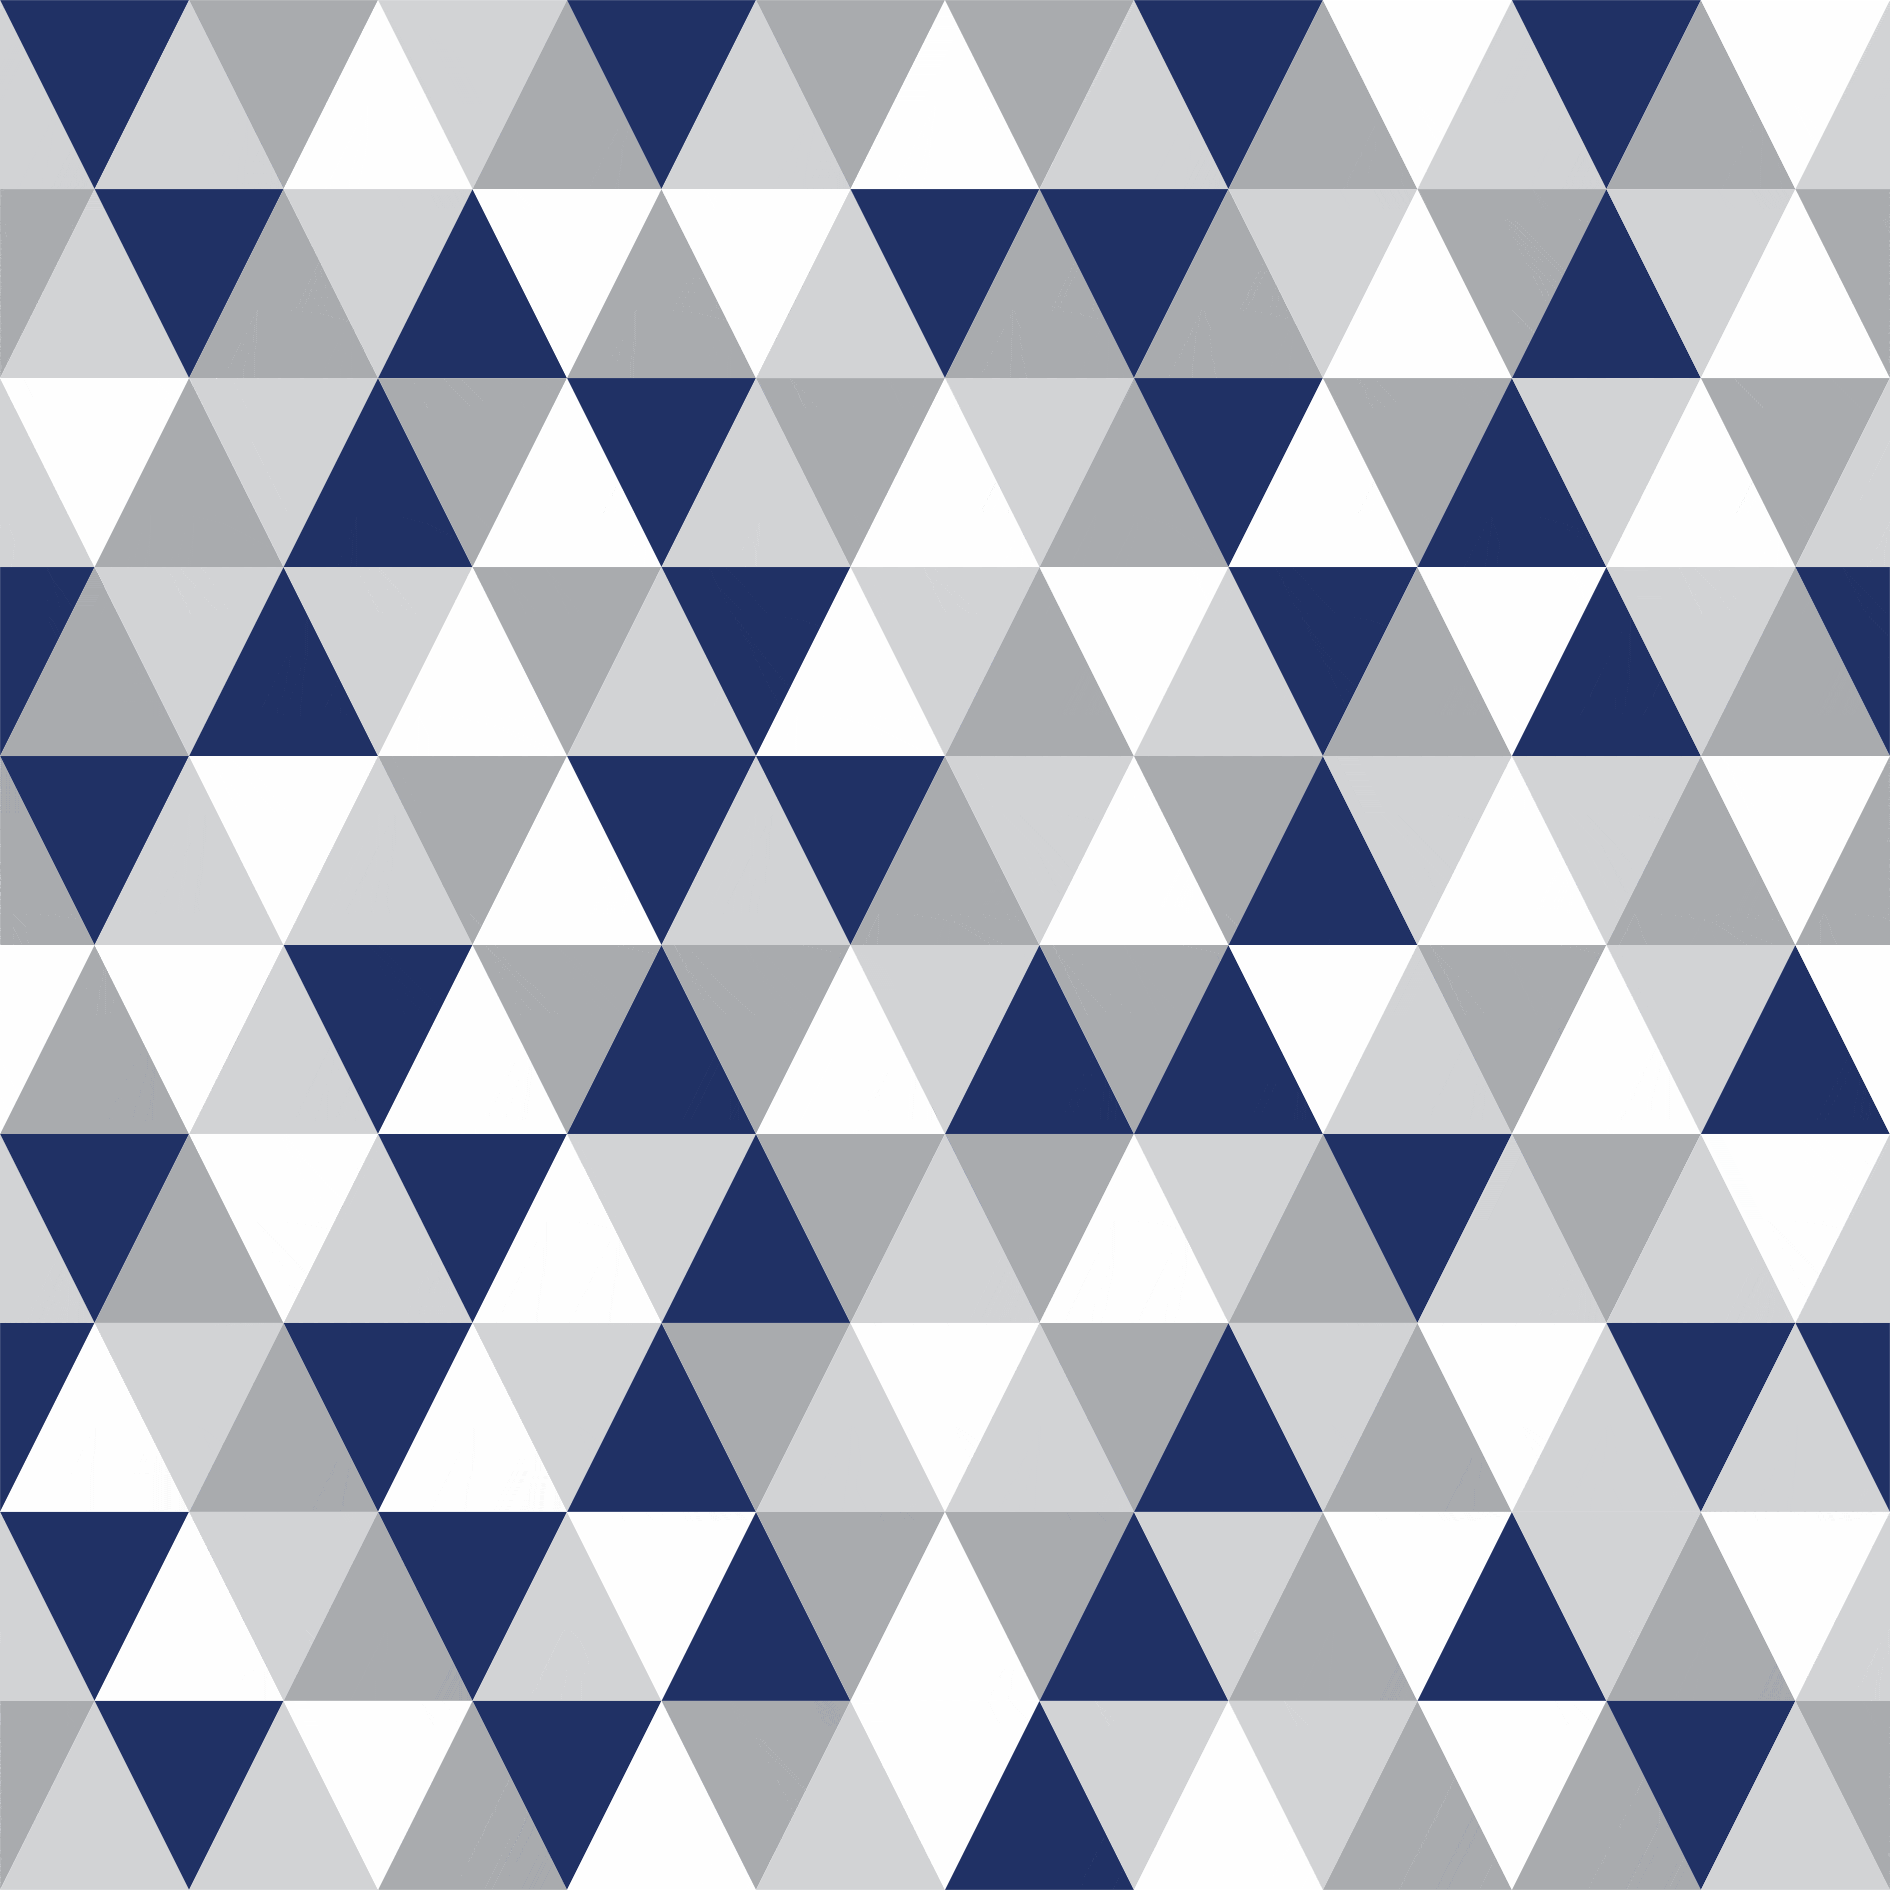 Tecido Tricoline estampado triângulos azul marinho e cinza